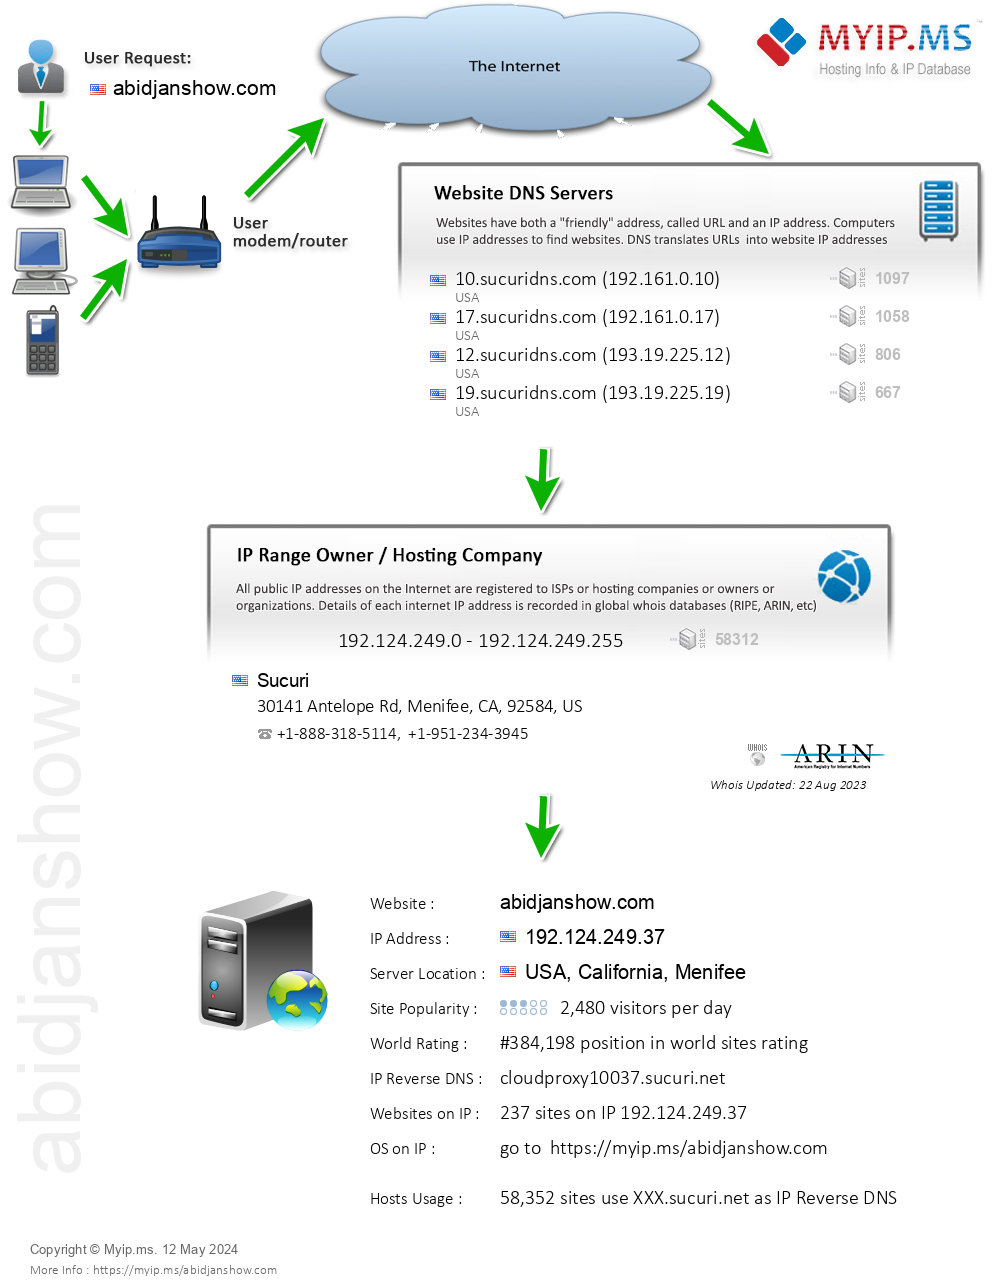 Abidjanshow.com - Website Hosting Visual IP Diagram